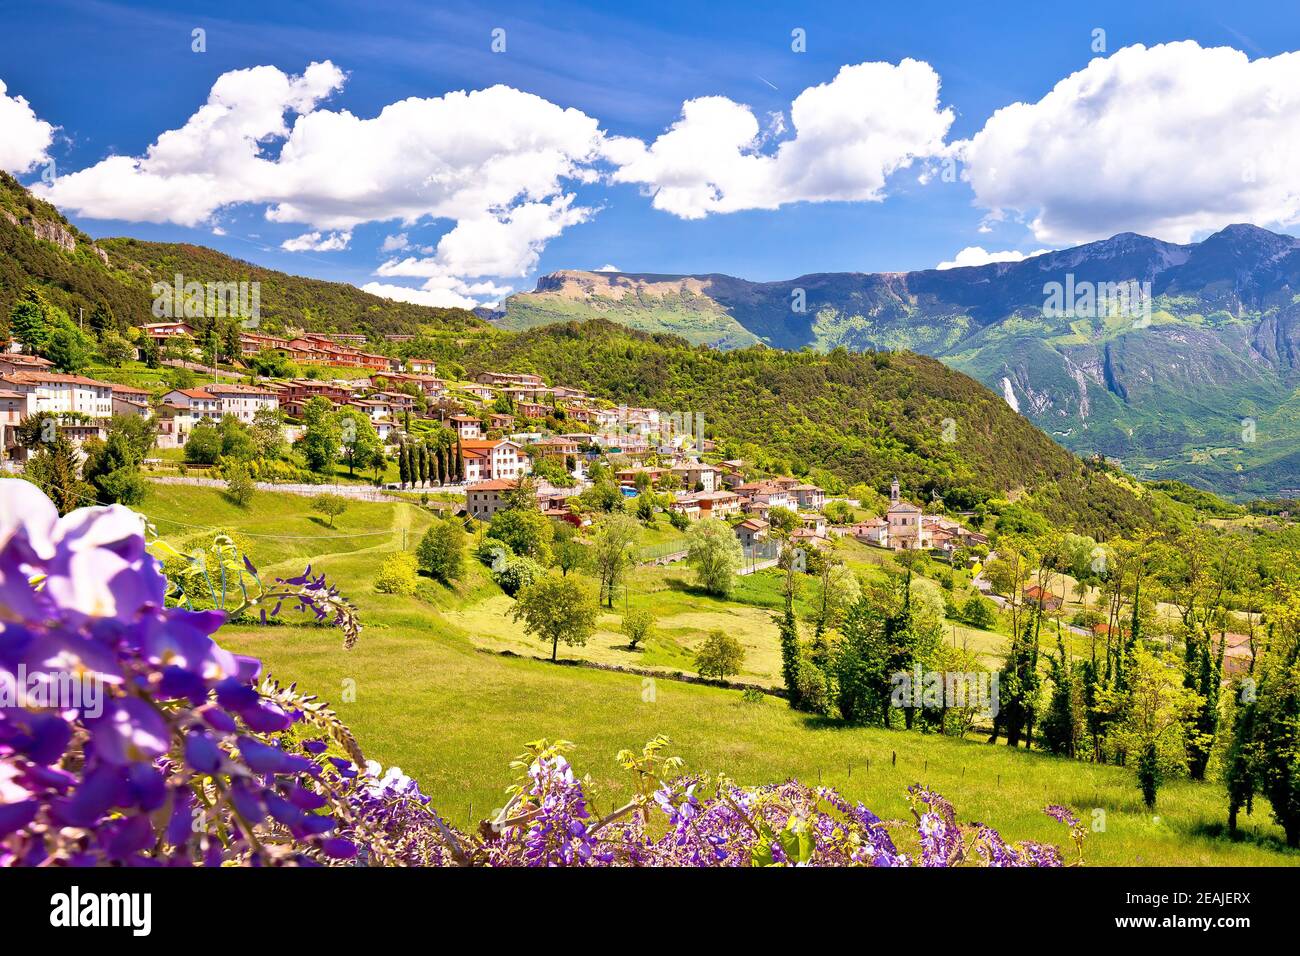 Idílica aldea de Vesio en los Alpes Dolomitas sobre el lago de Garda Foto de stock